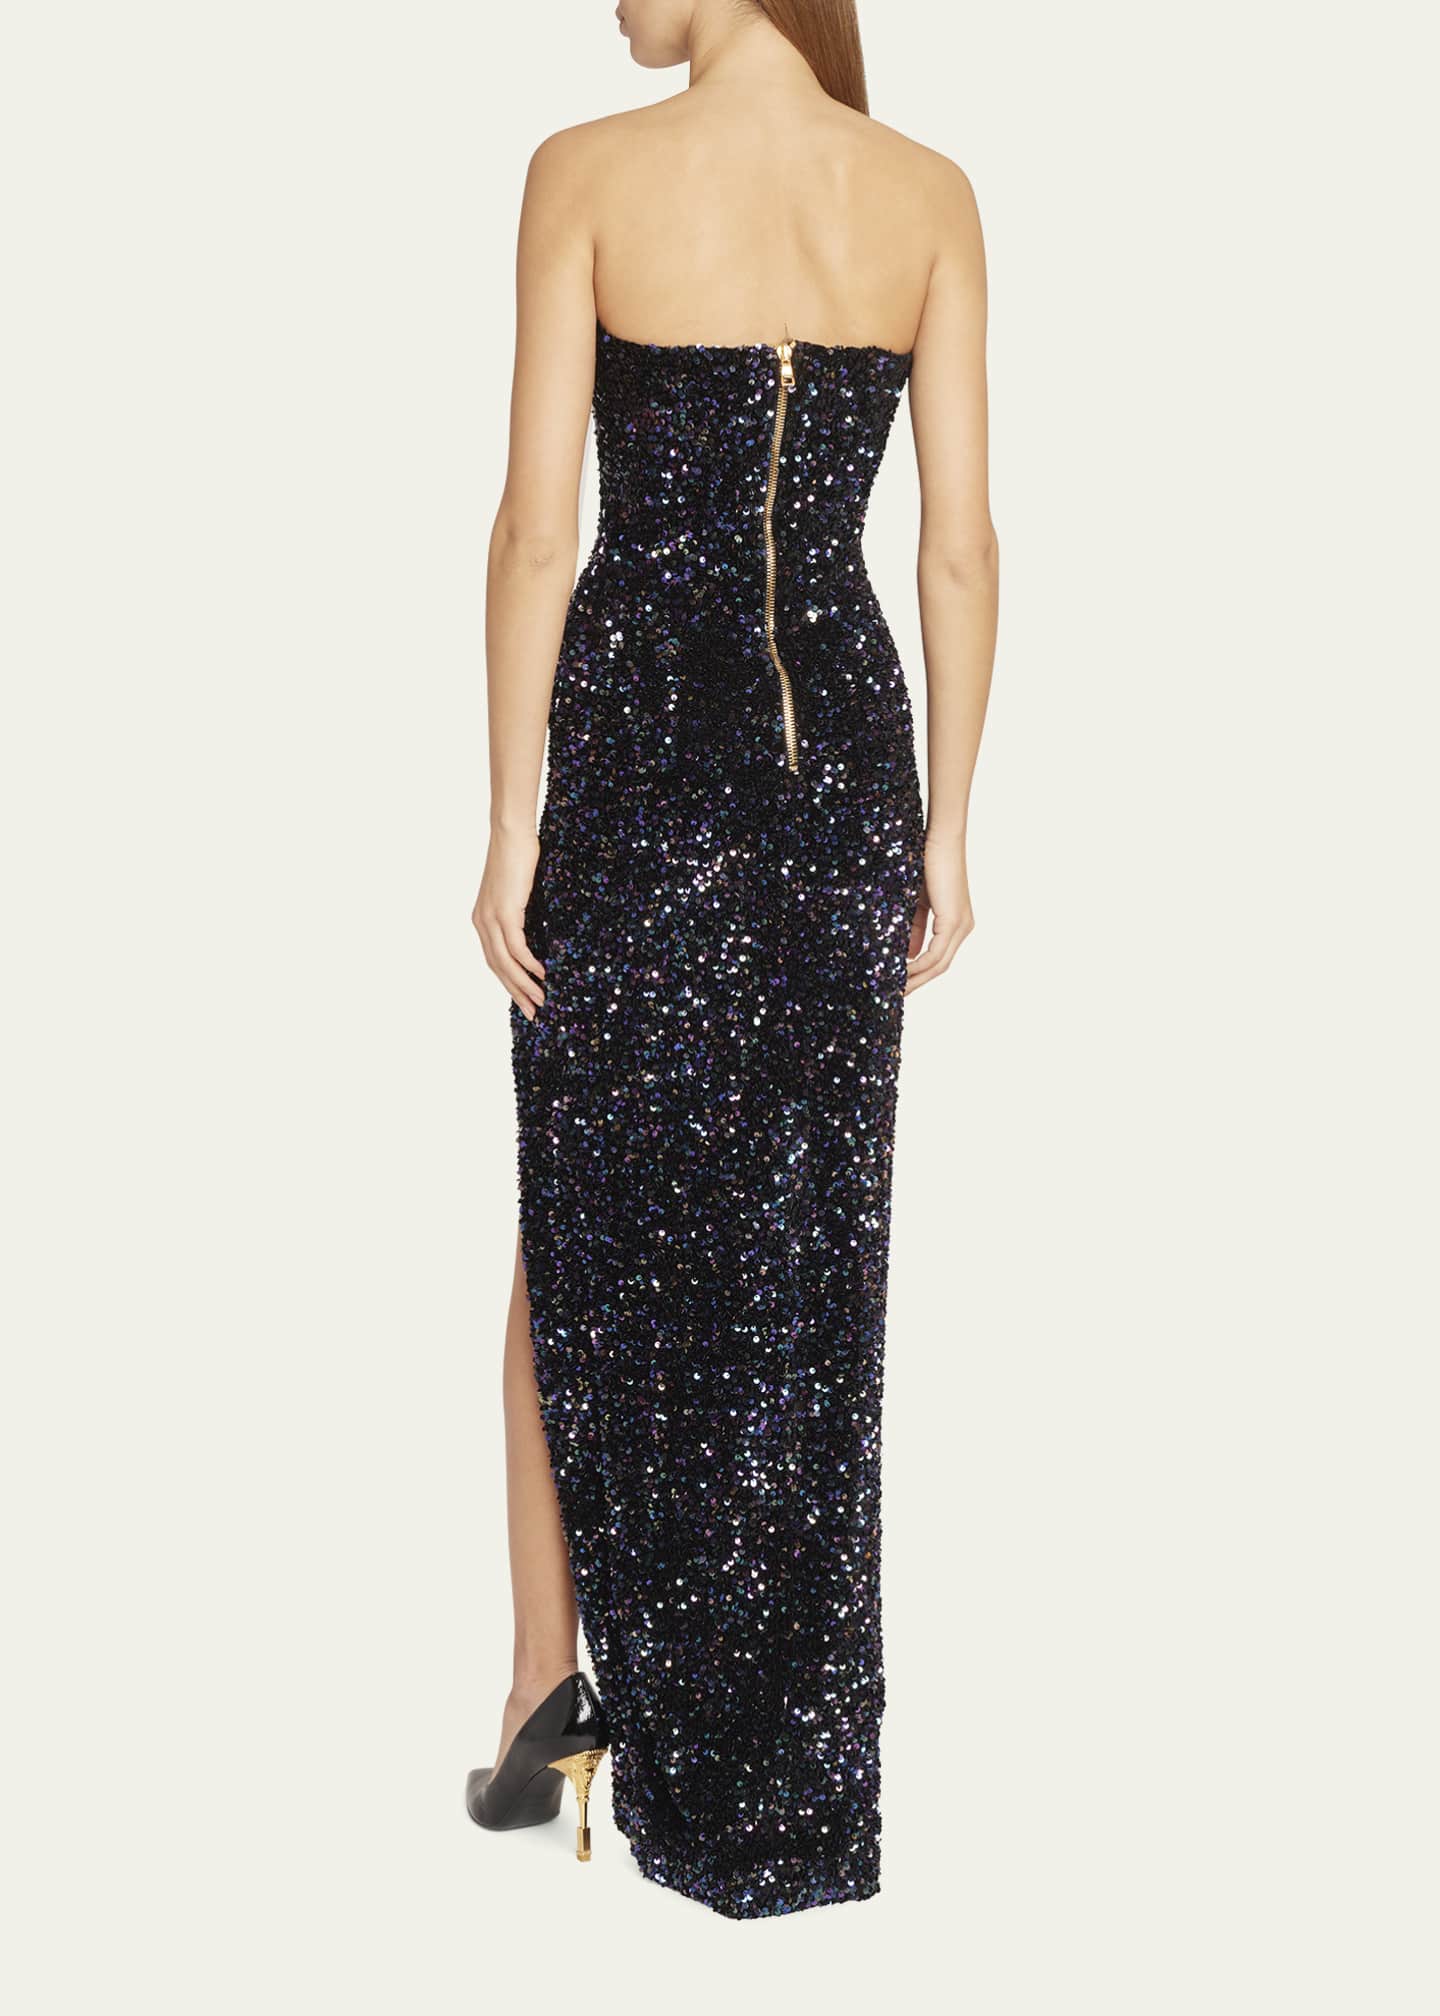 Balmain Strapless Bustier Glitter Long Dress with Slit - Bergdorf Goodman